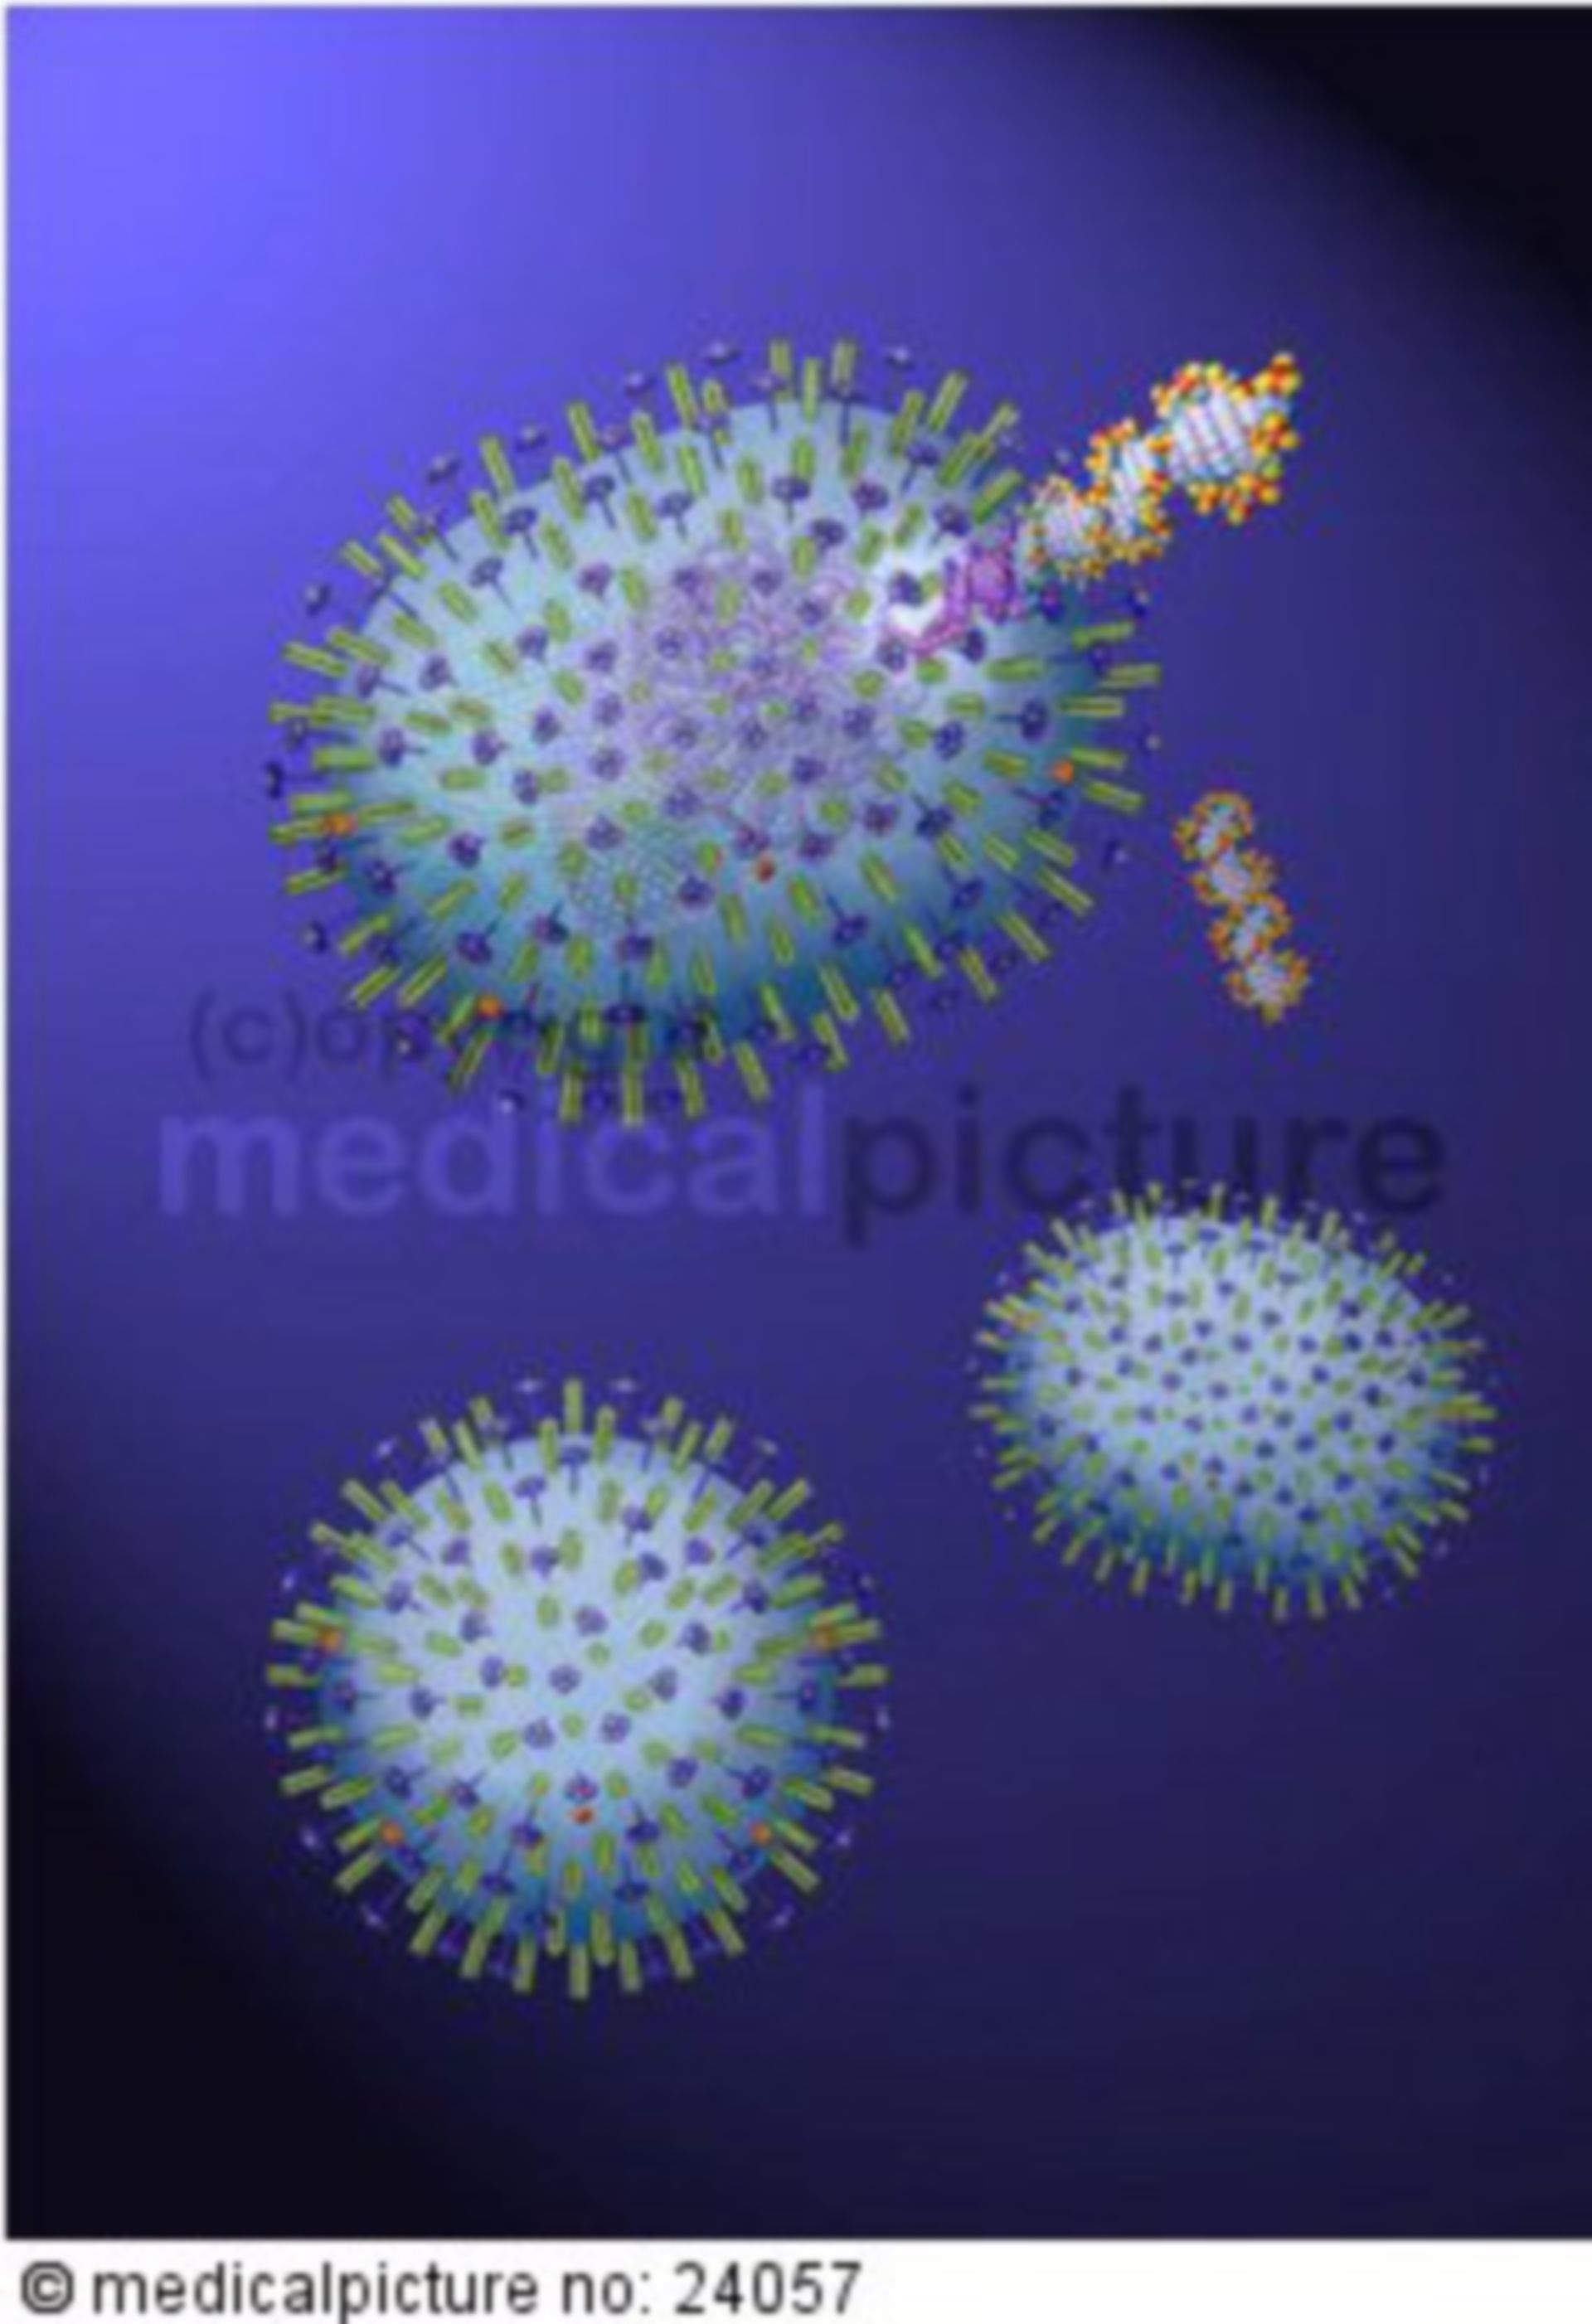  H5N1 Virus, Influenza-A, Vogelgrippe, avian influenza, bird flu 